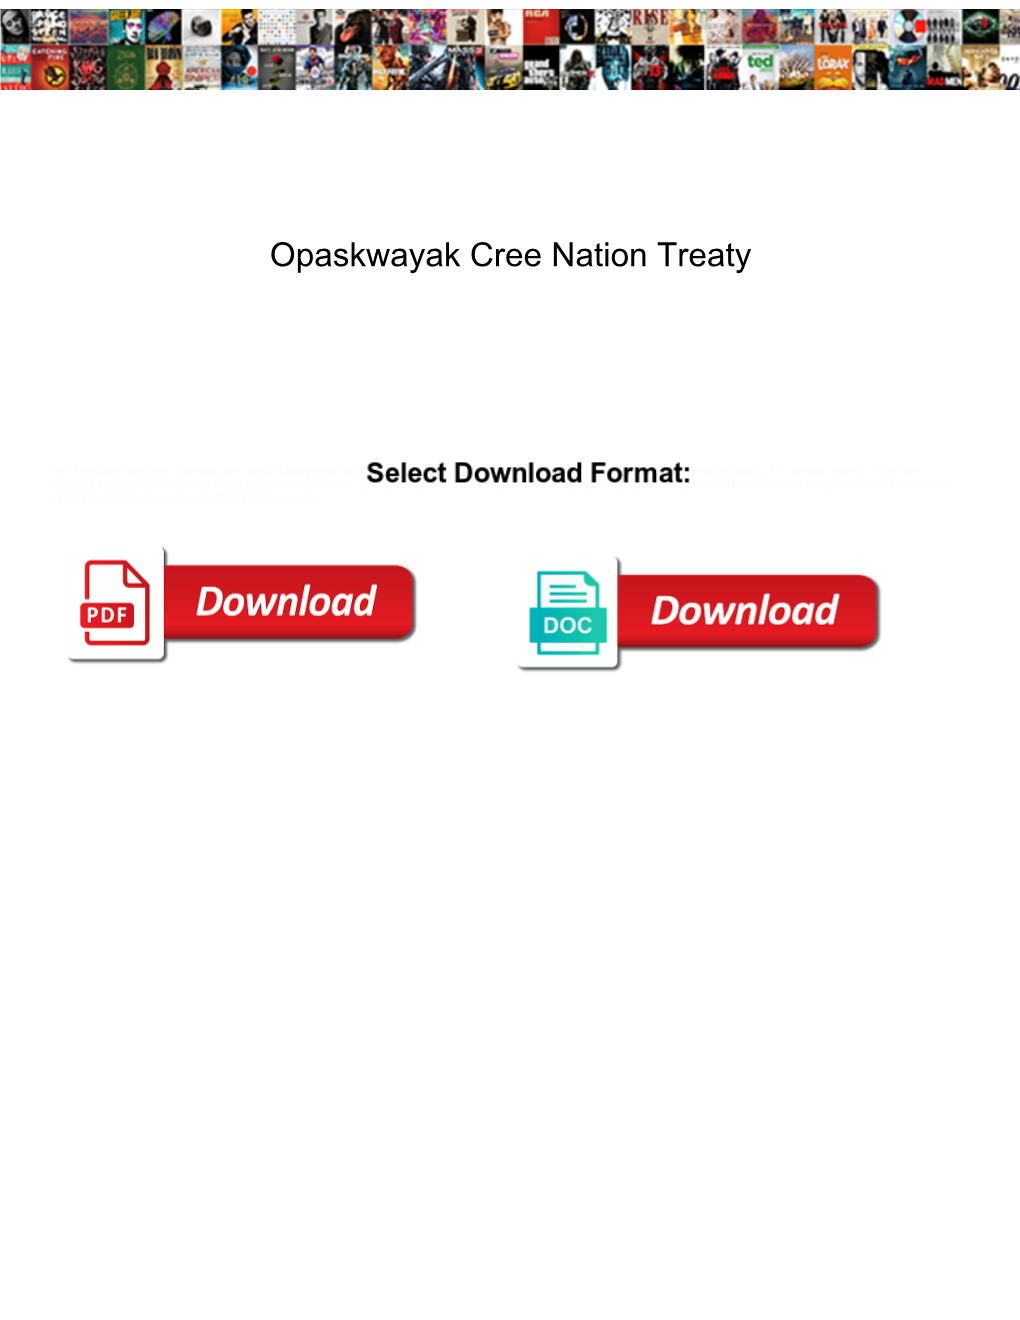 Opaskwayak Cree Nation Treaty